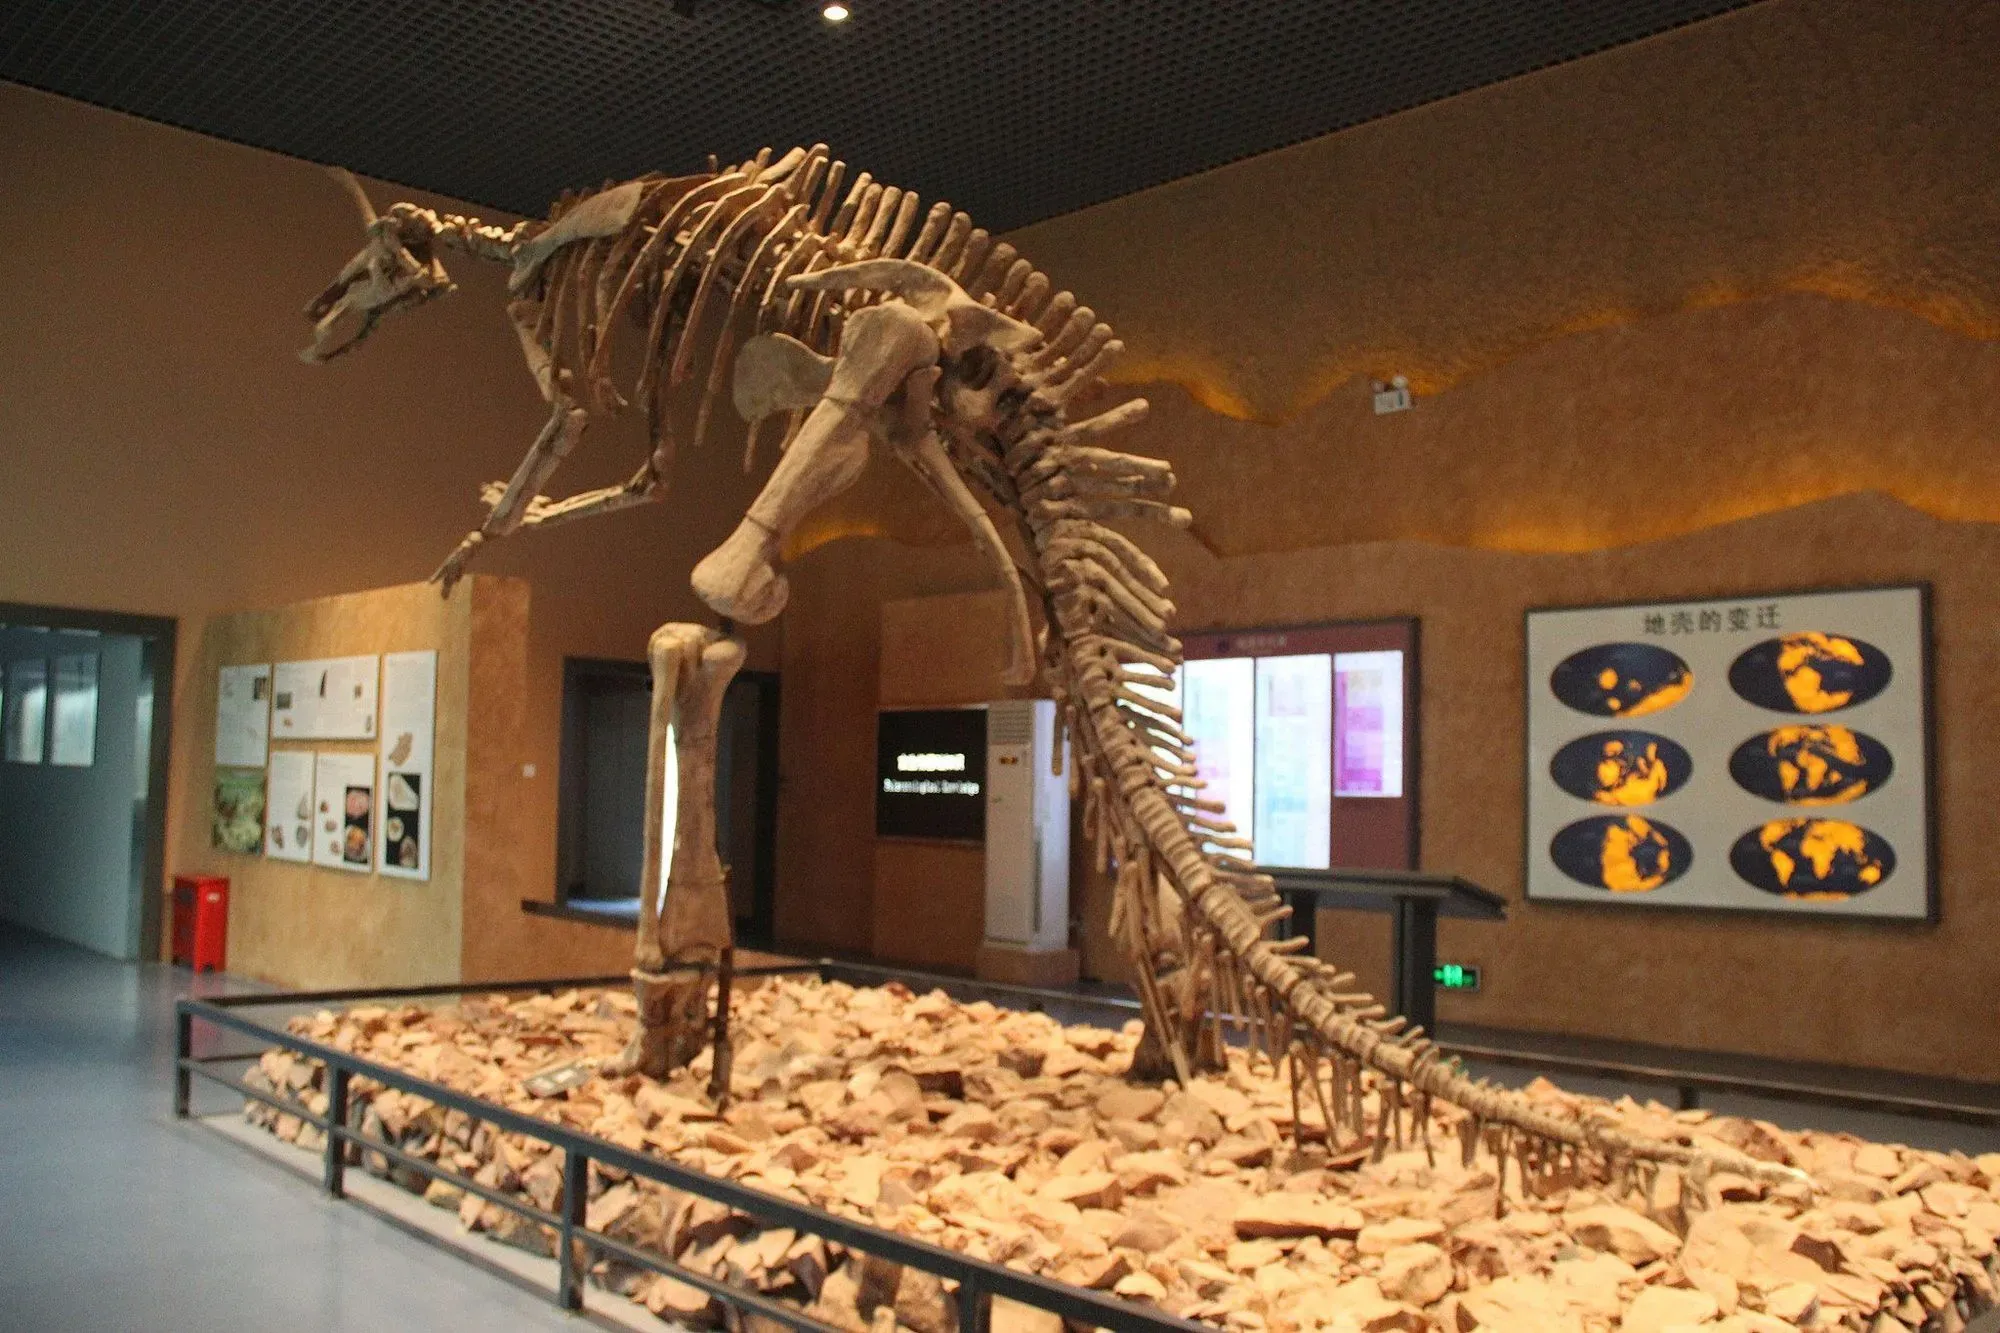 The Tsintaosaurus dinosaur often walks on its four legs.